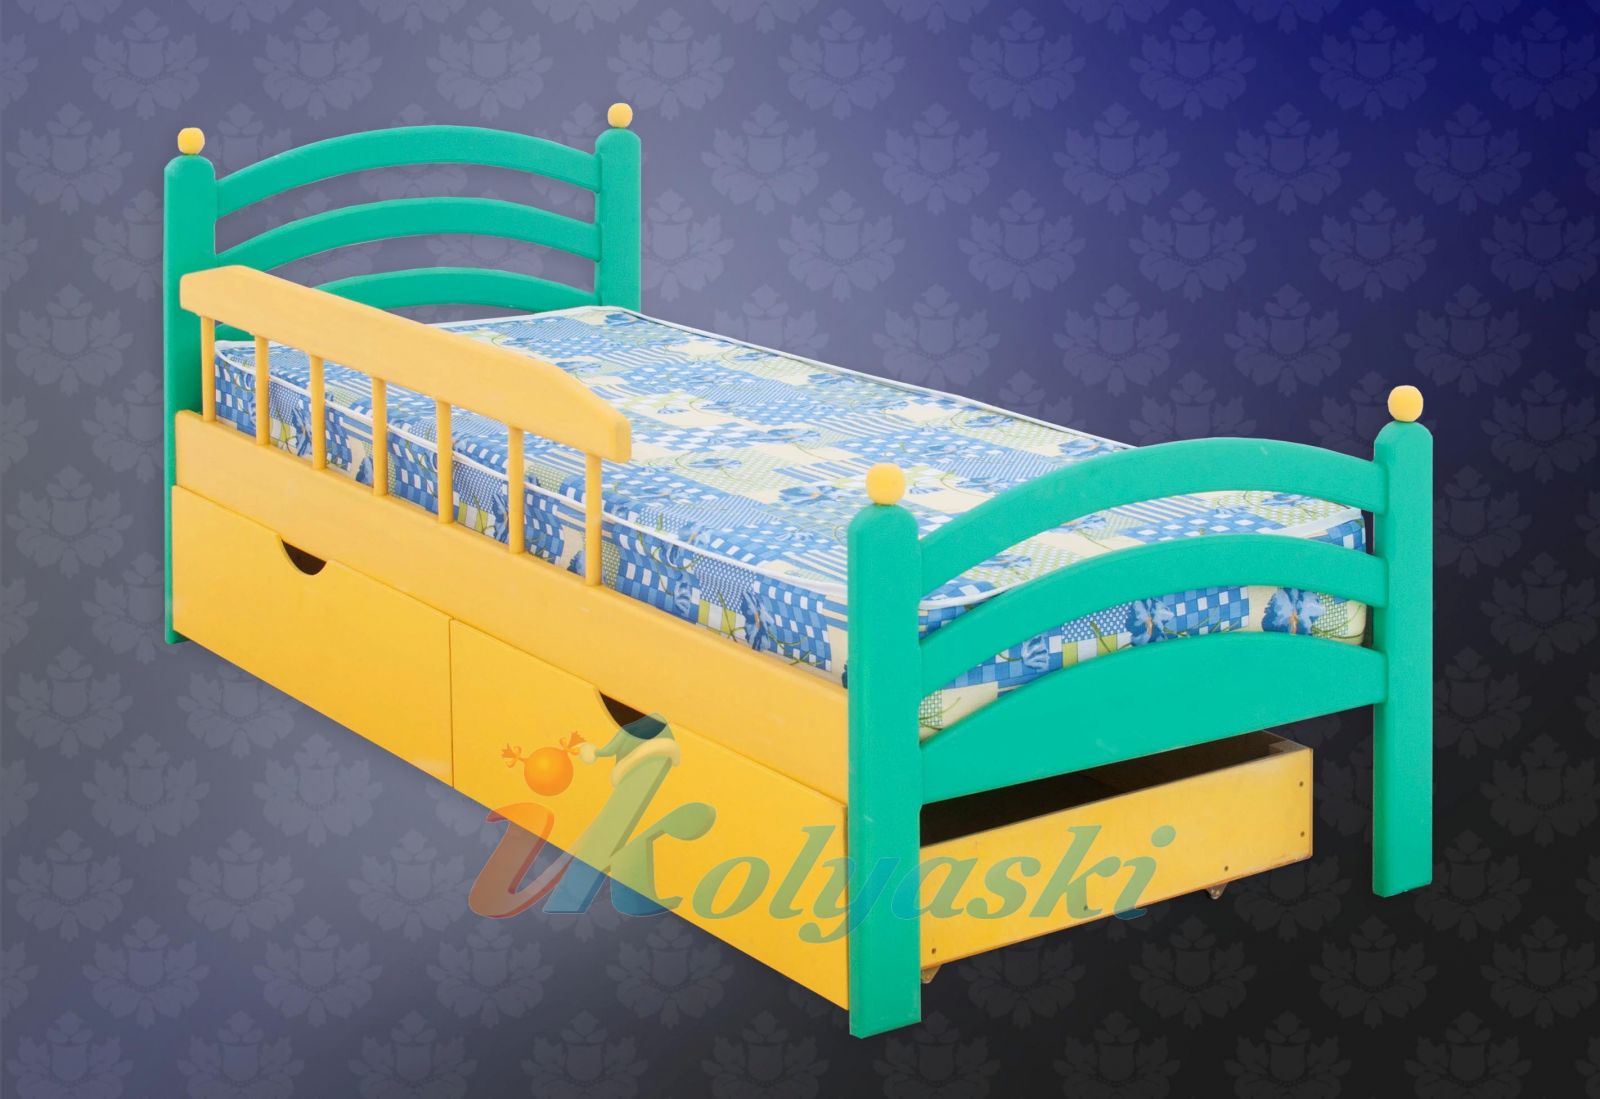 Детская кровать Сказка с бортиками и 2 выкатными ящиками, массив сосны, фирма Меб-ЕГРА.  Кровать детская Сказка, детская кровать с бортиками, детский кровать, детские кровати, кровать в детскую, кровать с, кровать с бортиками, кровать с ящиками,  купить детскую кровать, детская кровать от, детский кровать фото, детская кровать фото, кровати